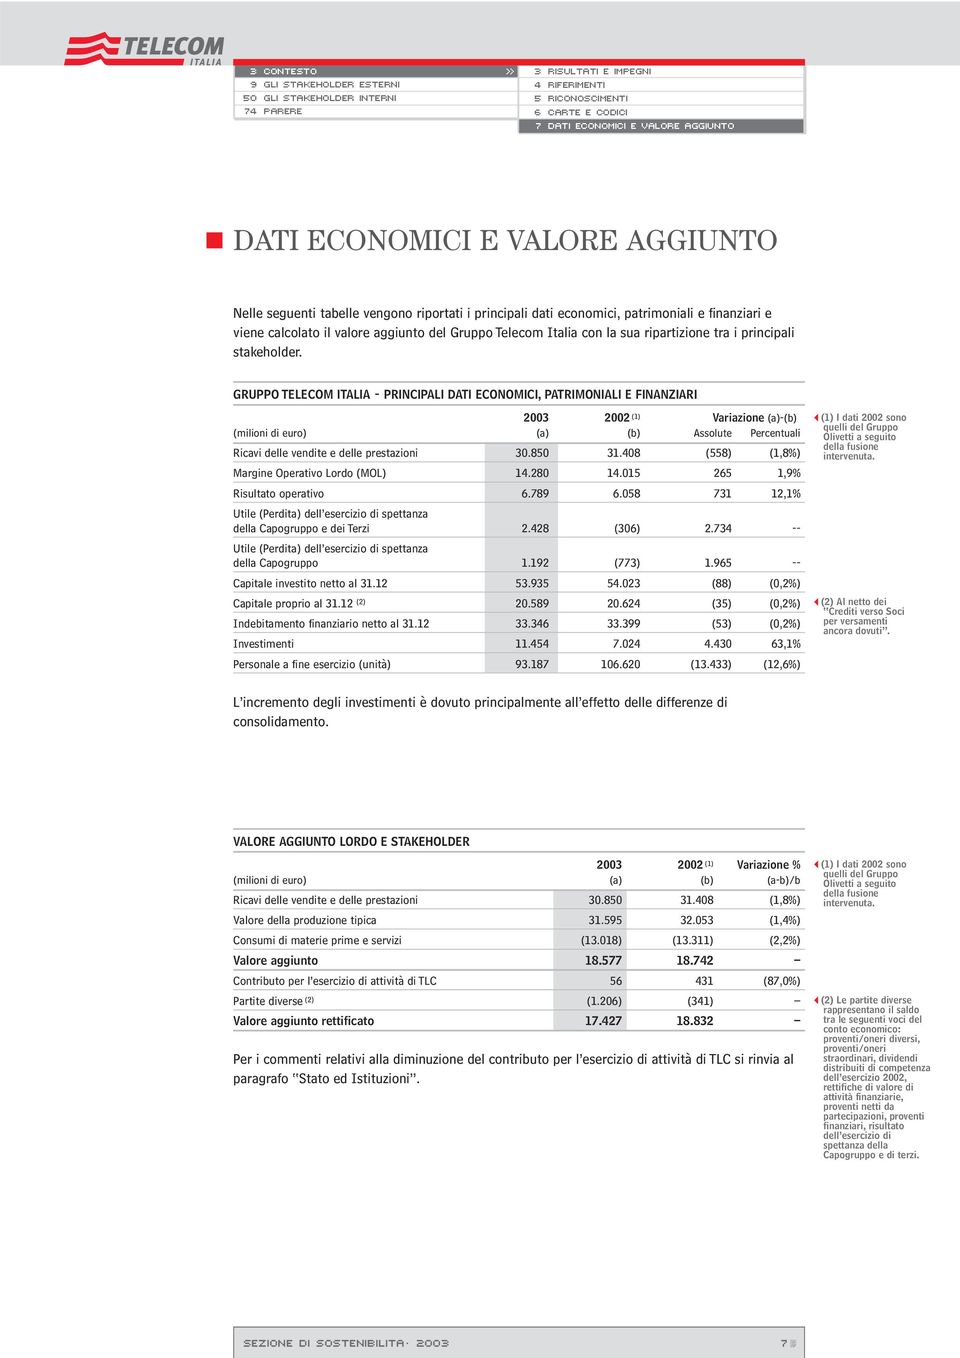 GRUPPO TELECOM ITALIA - PRINCIPALI DATI ECONOMICI, PATRIMONIALI E FINANZIARI 2003 2002 (1) Variazione (a)-(b) (milioni di euro) (a) (b) Assolute Percentuali Ricavi delle vendite e delle prestazioni